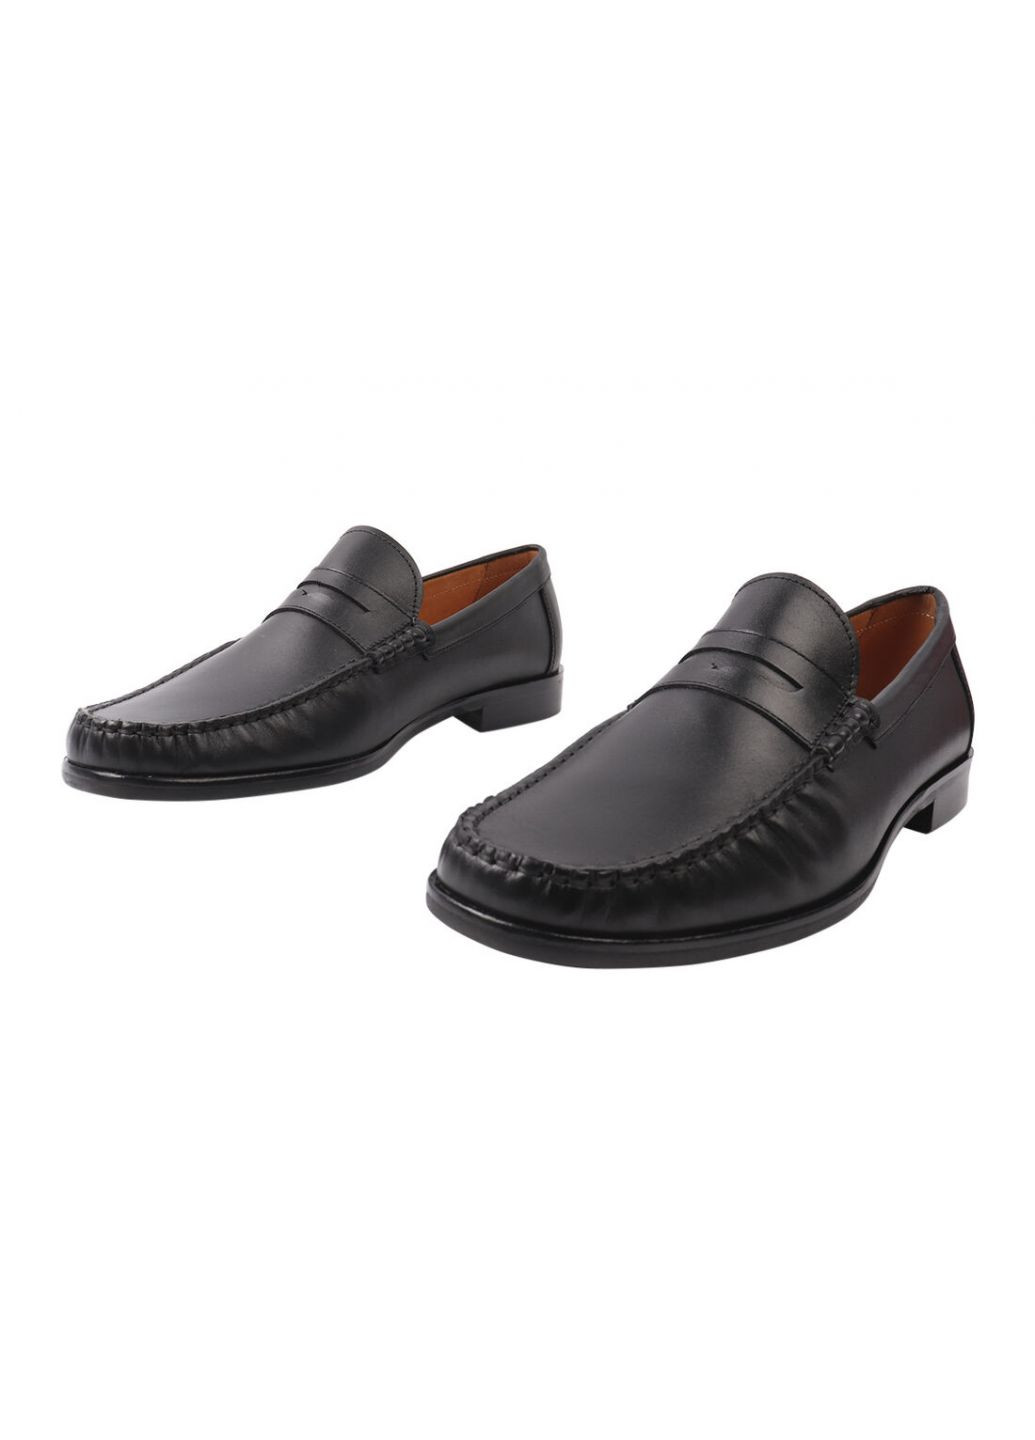 Черные туфли мужские из натуральной кожи, на низком ходу, черные, Conhpol